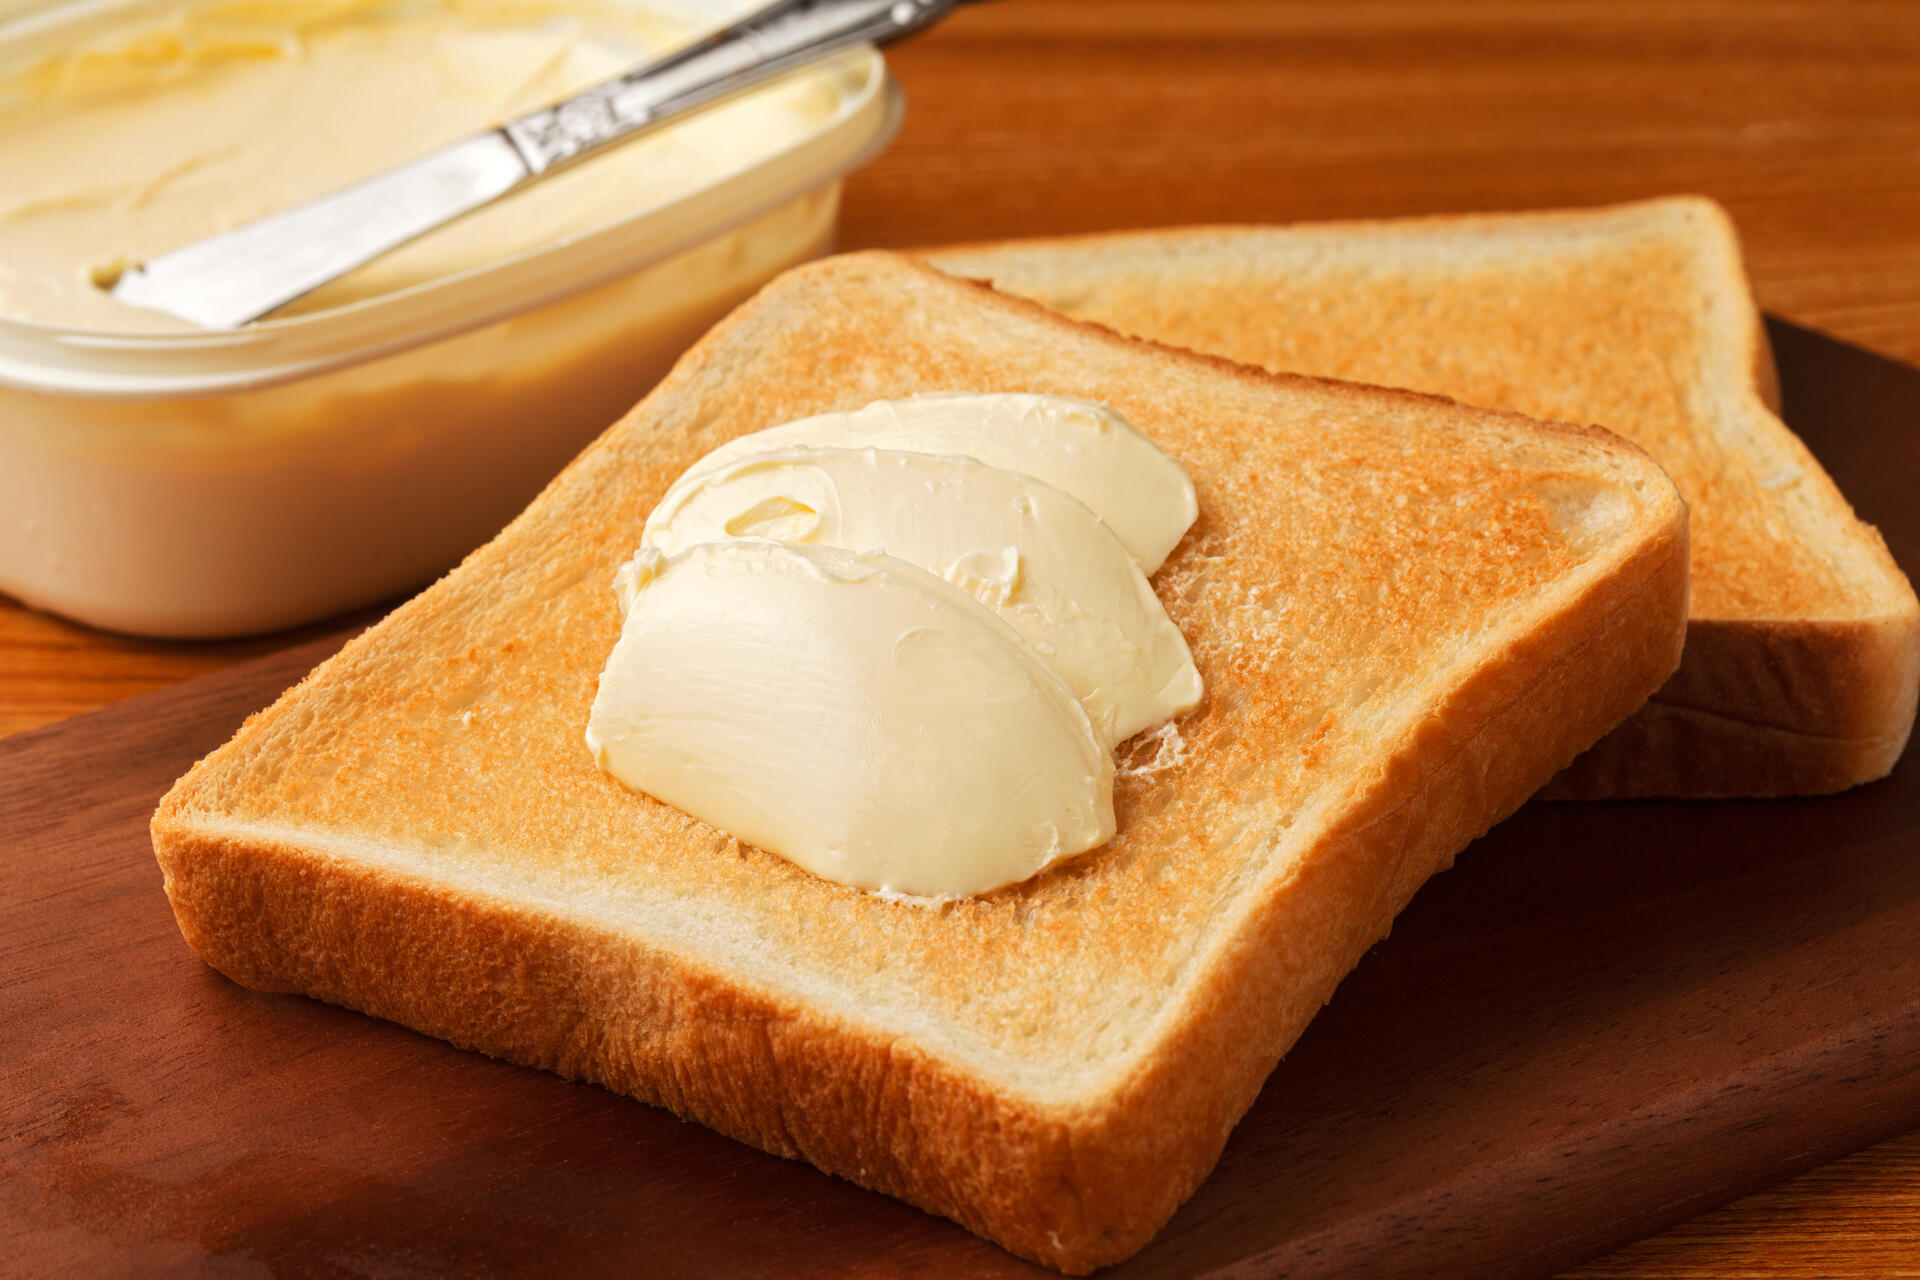 Wer der Umwelt und sich selbst etwas Gutes tun will, wählt Margarine statt Butter. Doch Achtung: Manche Produkte enthalten tierische Inhaltsstoffe.